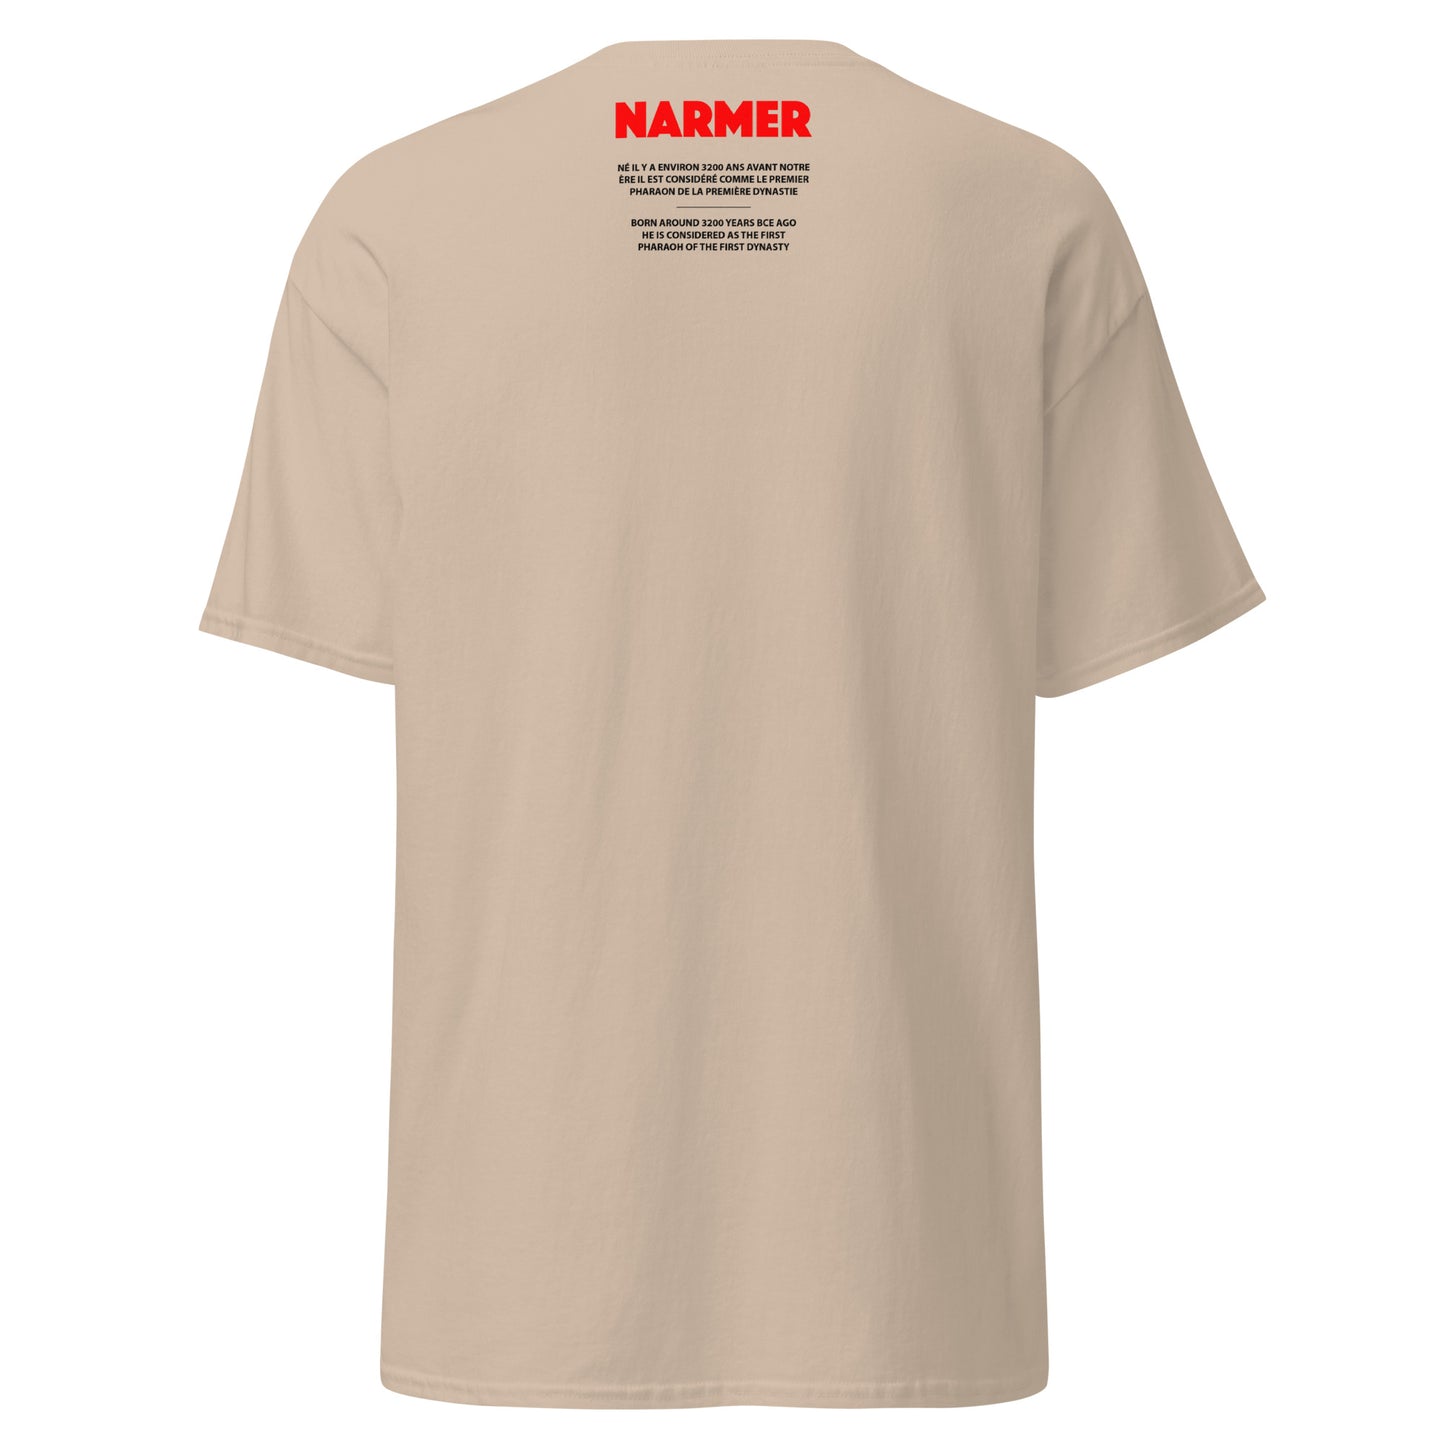 NARMER (T-Shirt Cadre)